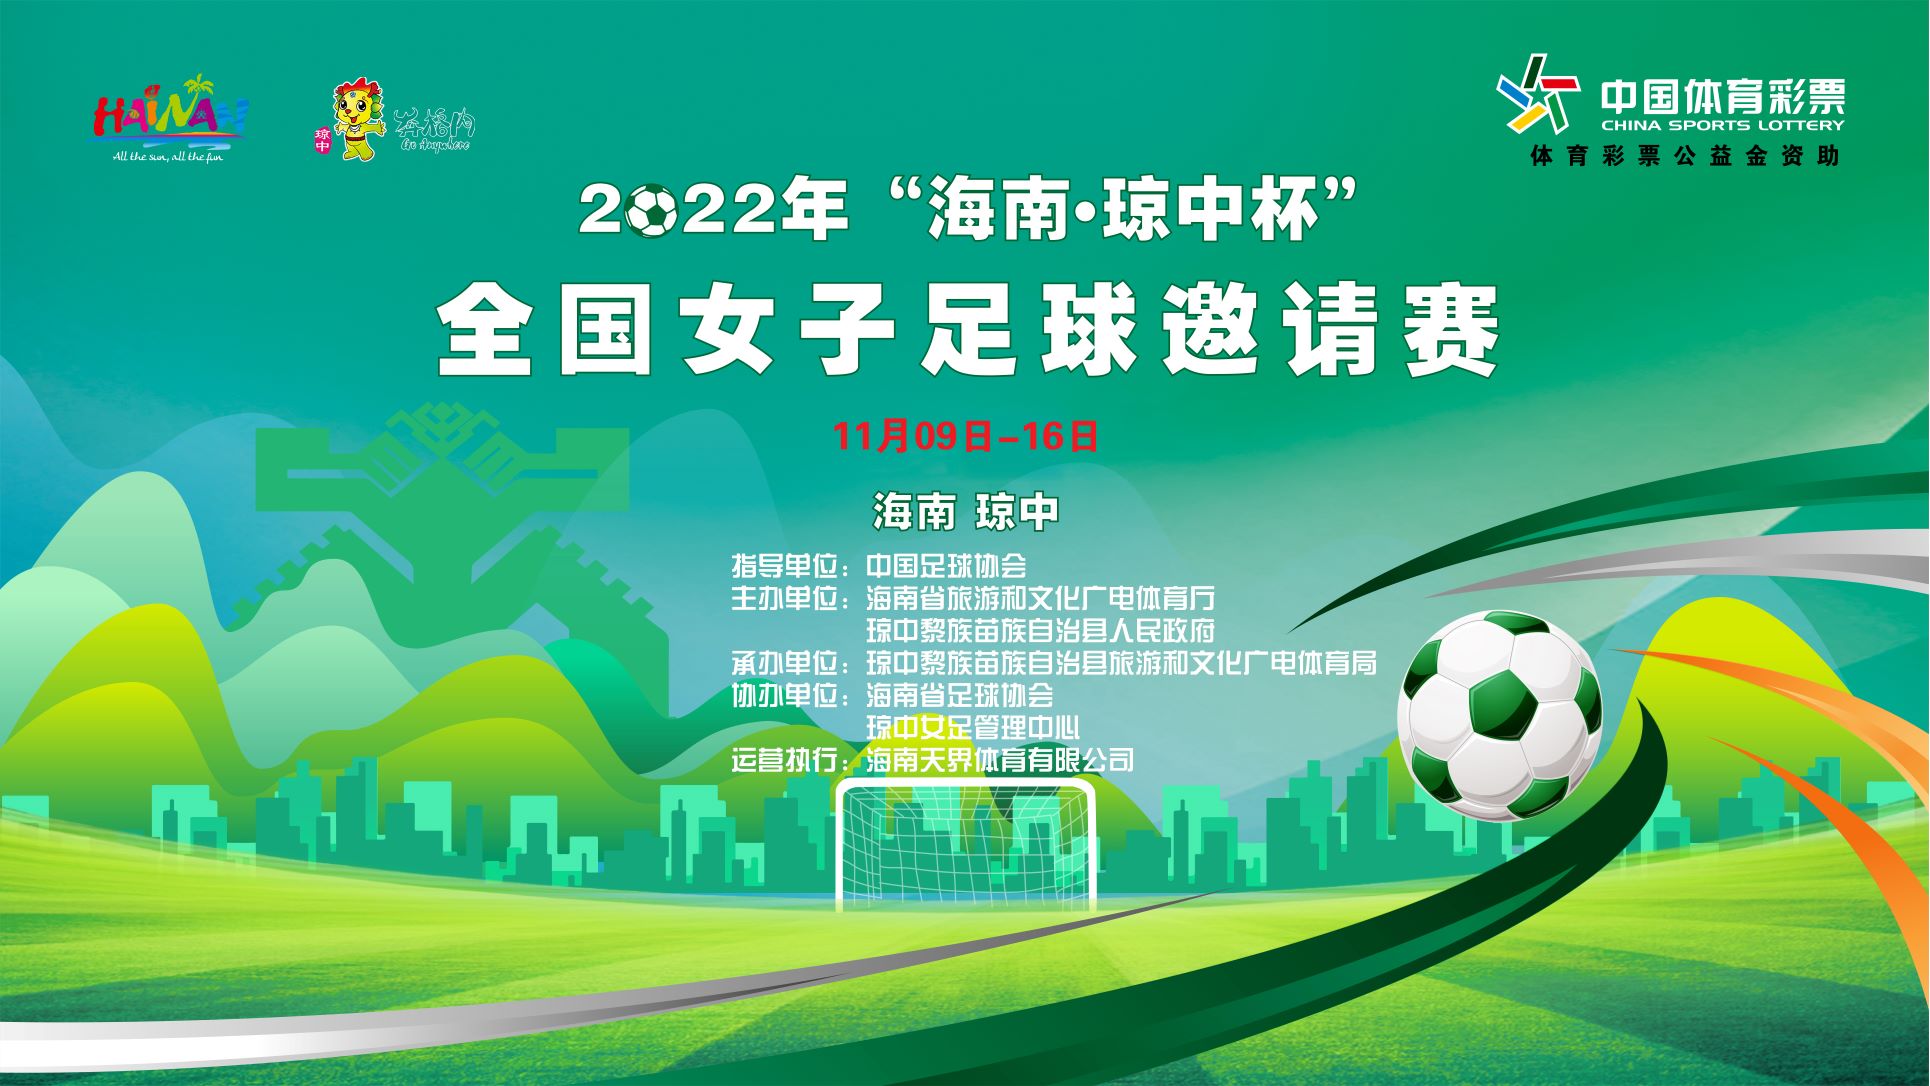 2022年“海南·琼中杯”全国女子足球邀请赛决赛日